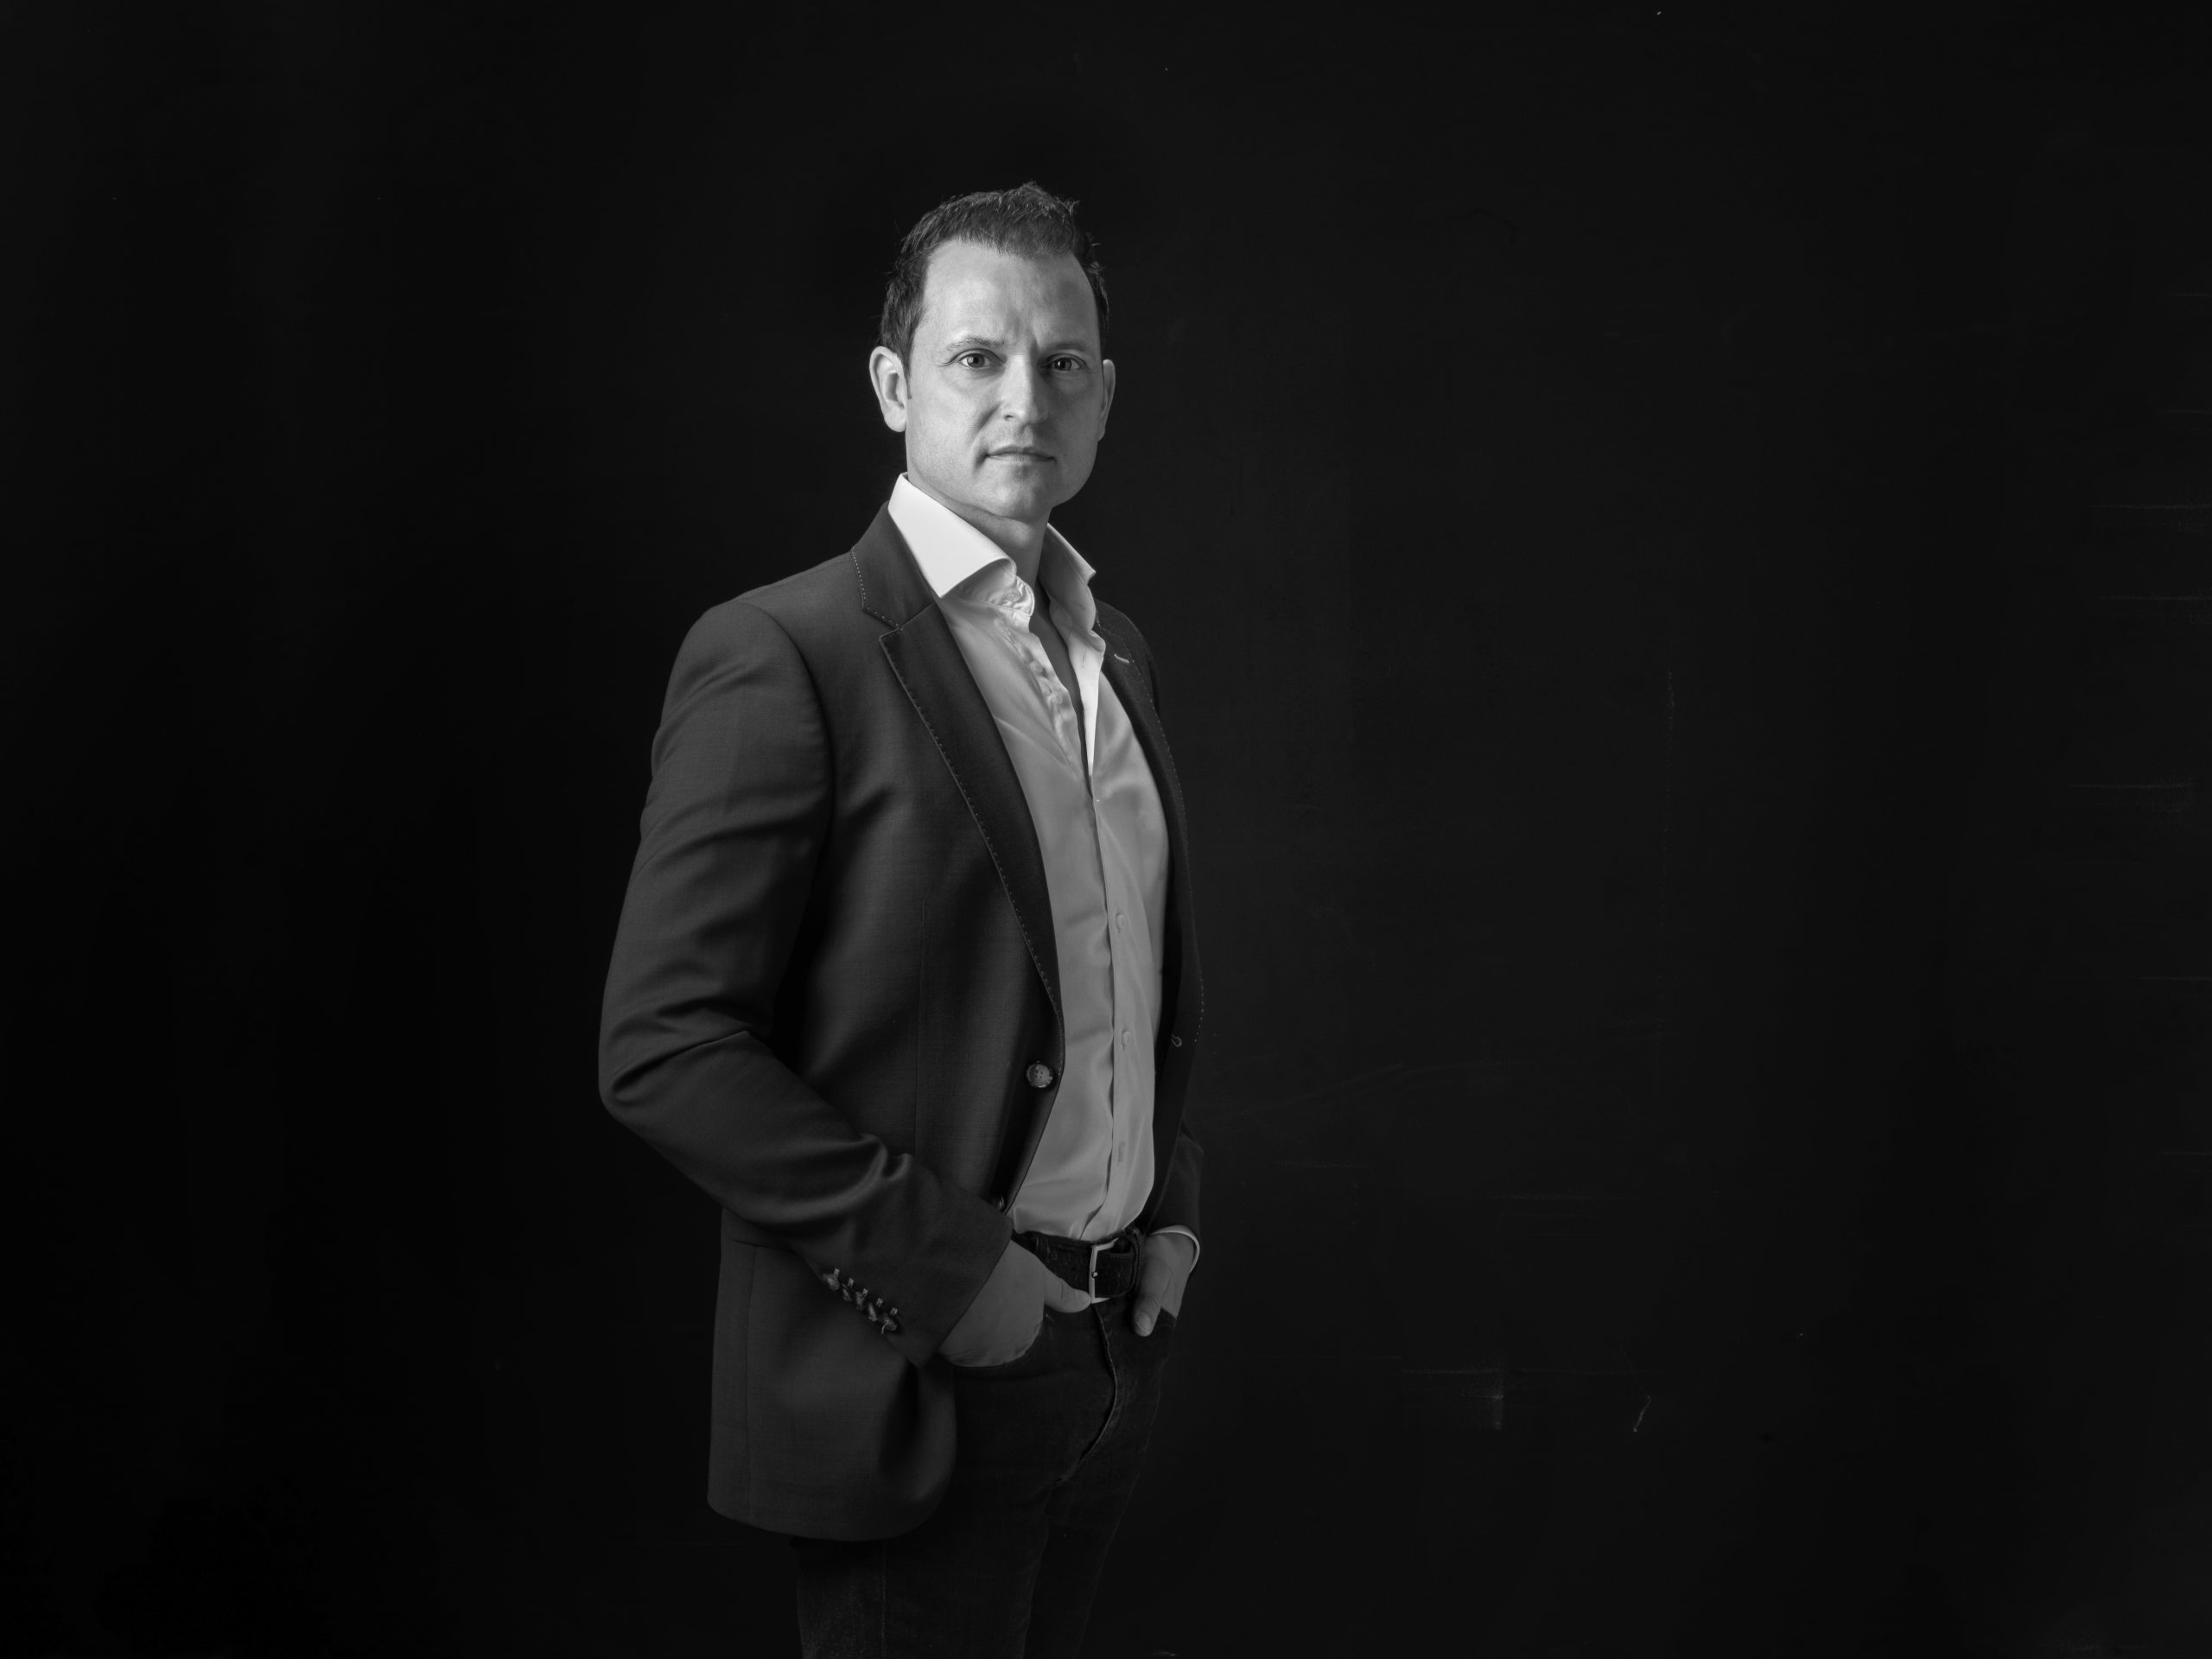 CEO Beijko Van Melick van Kalfire: “Wij verbinden mensen: we verkopen niet alleen haarden maar ook de emotie die vuur met zich meebrengt.”